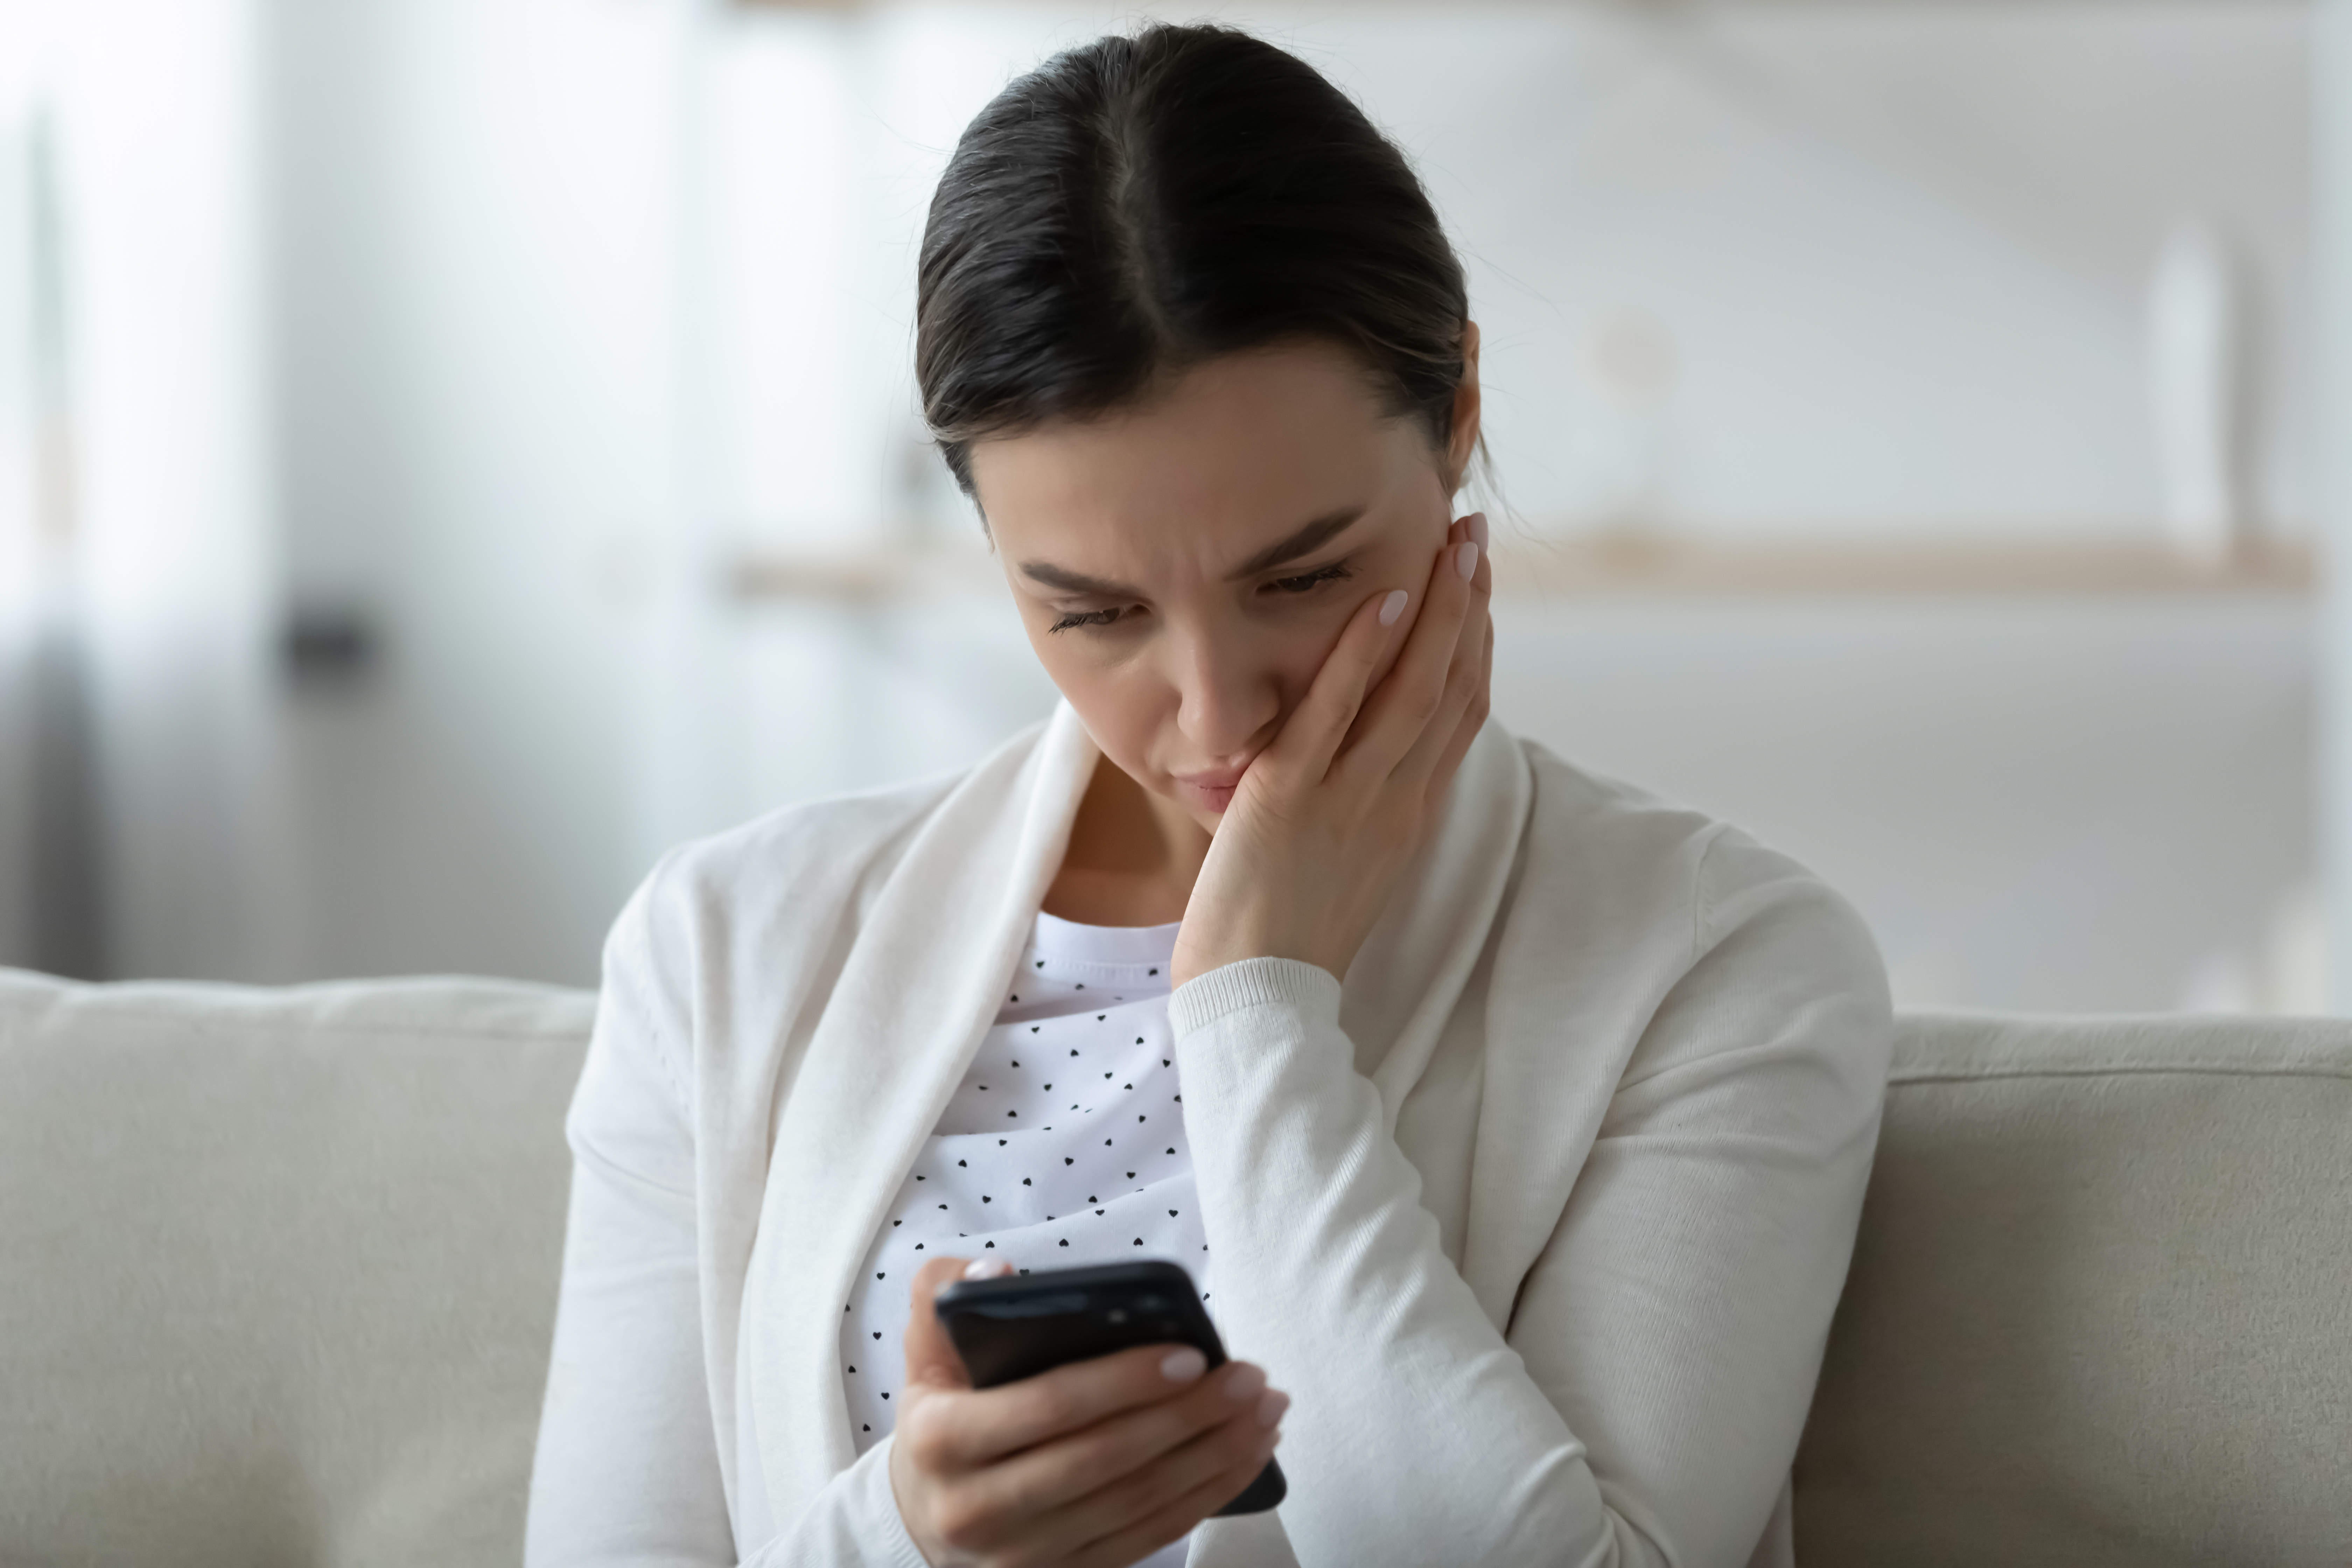 Une femme désemparée qui regarde son téléphone | Source : Shutterstock